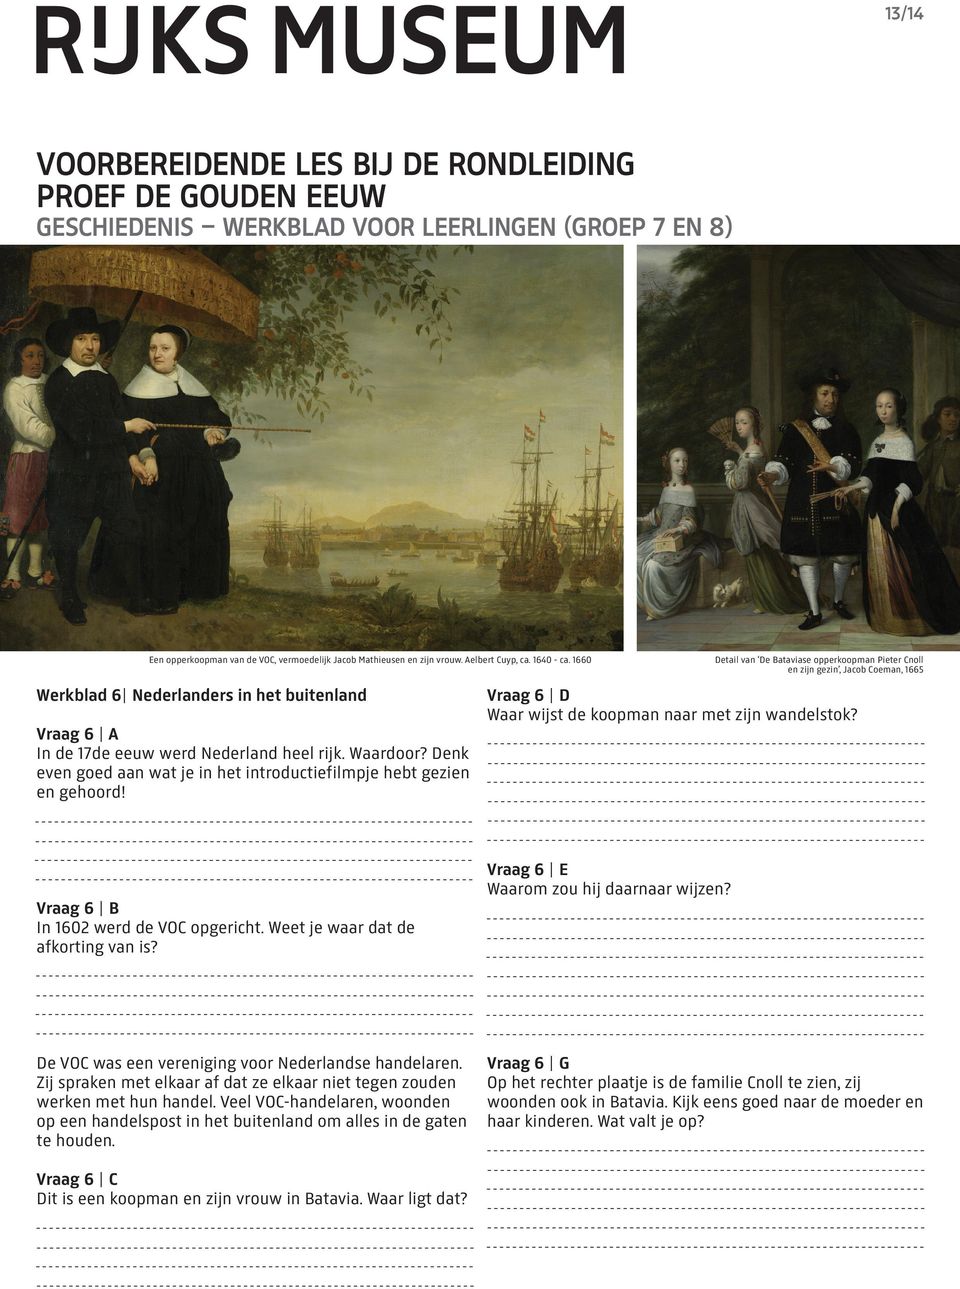 Vraag 6 B In 1602 werd de VOC opgericht. Weet je waar dat de afkorting van is? De VOC was een vereniging voor Nederlandse handelaren.